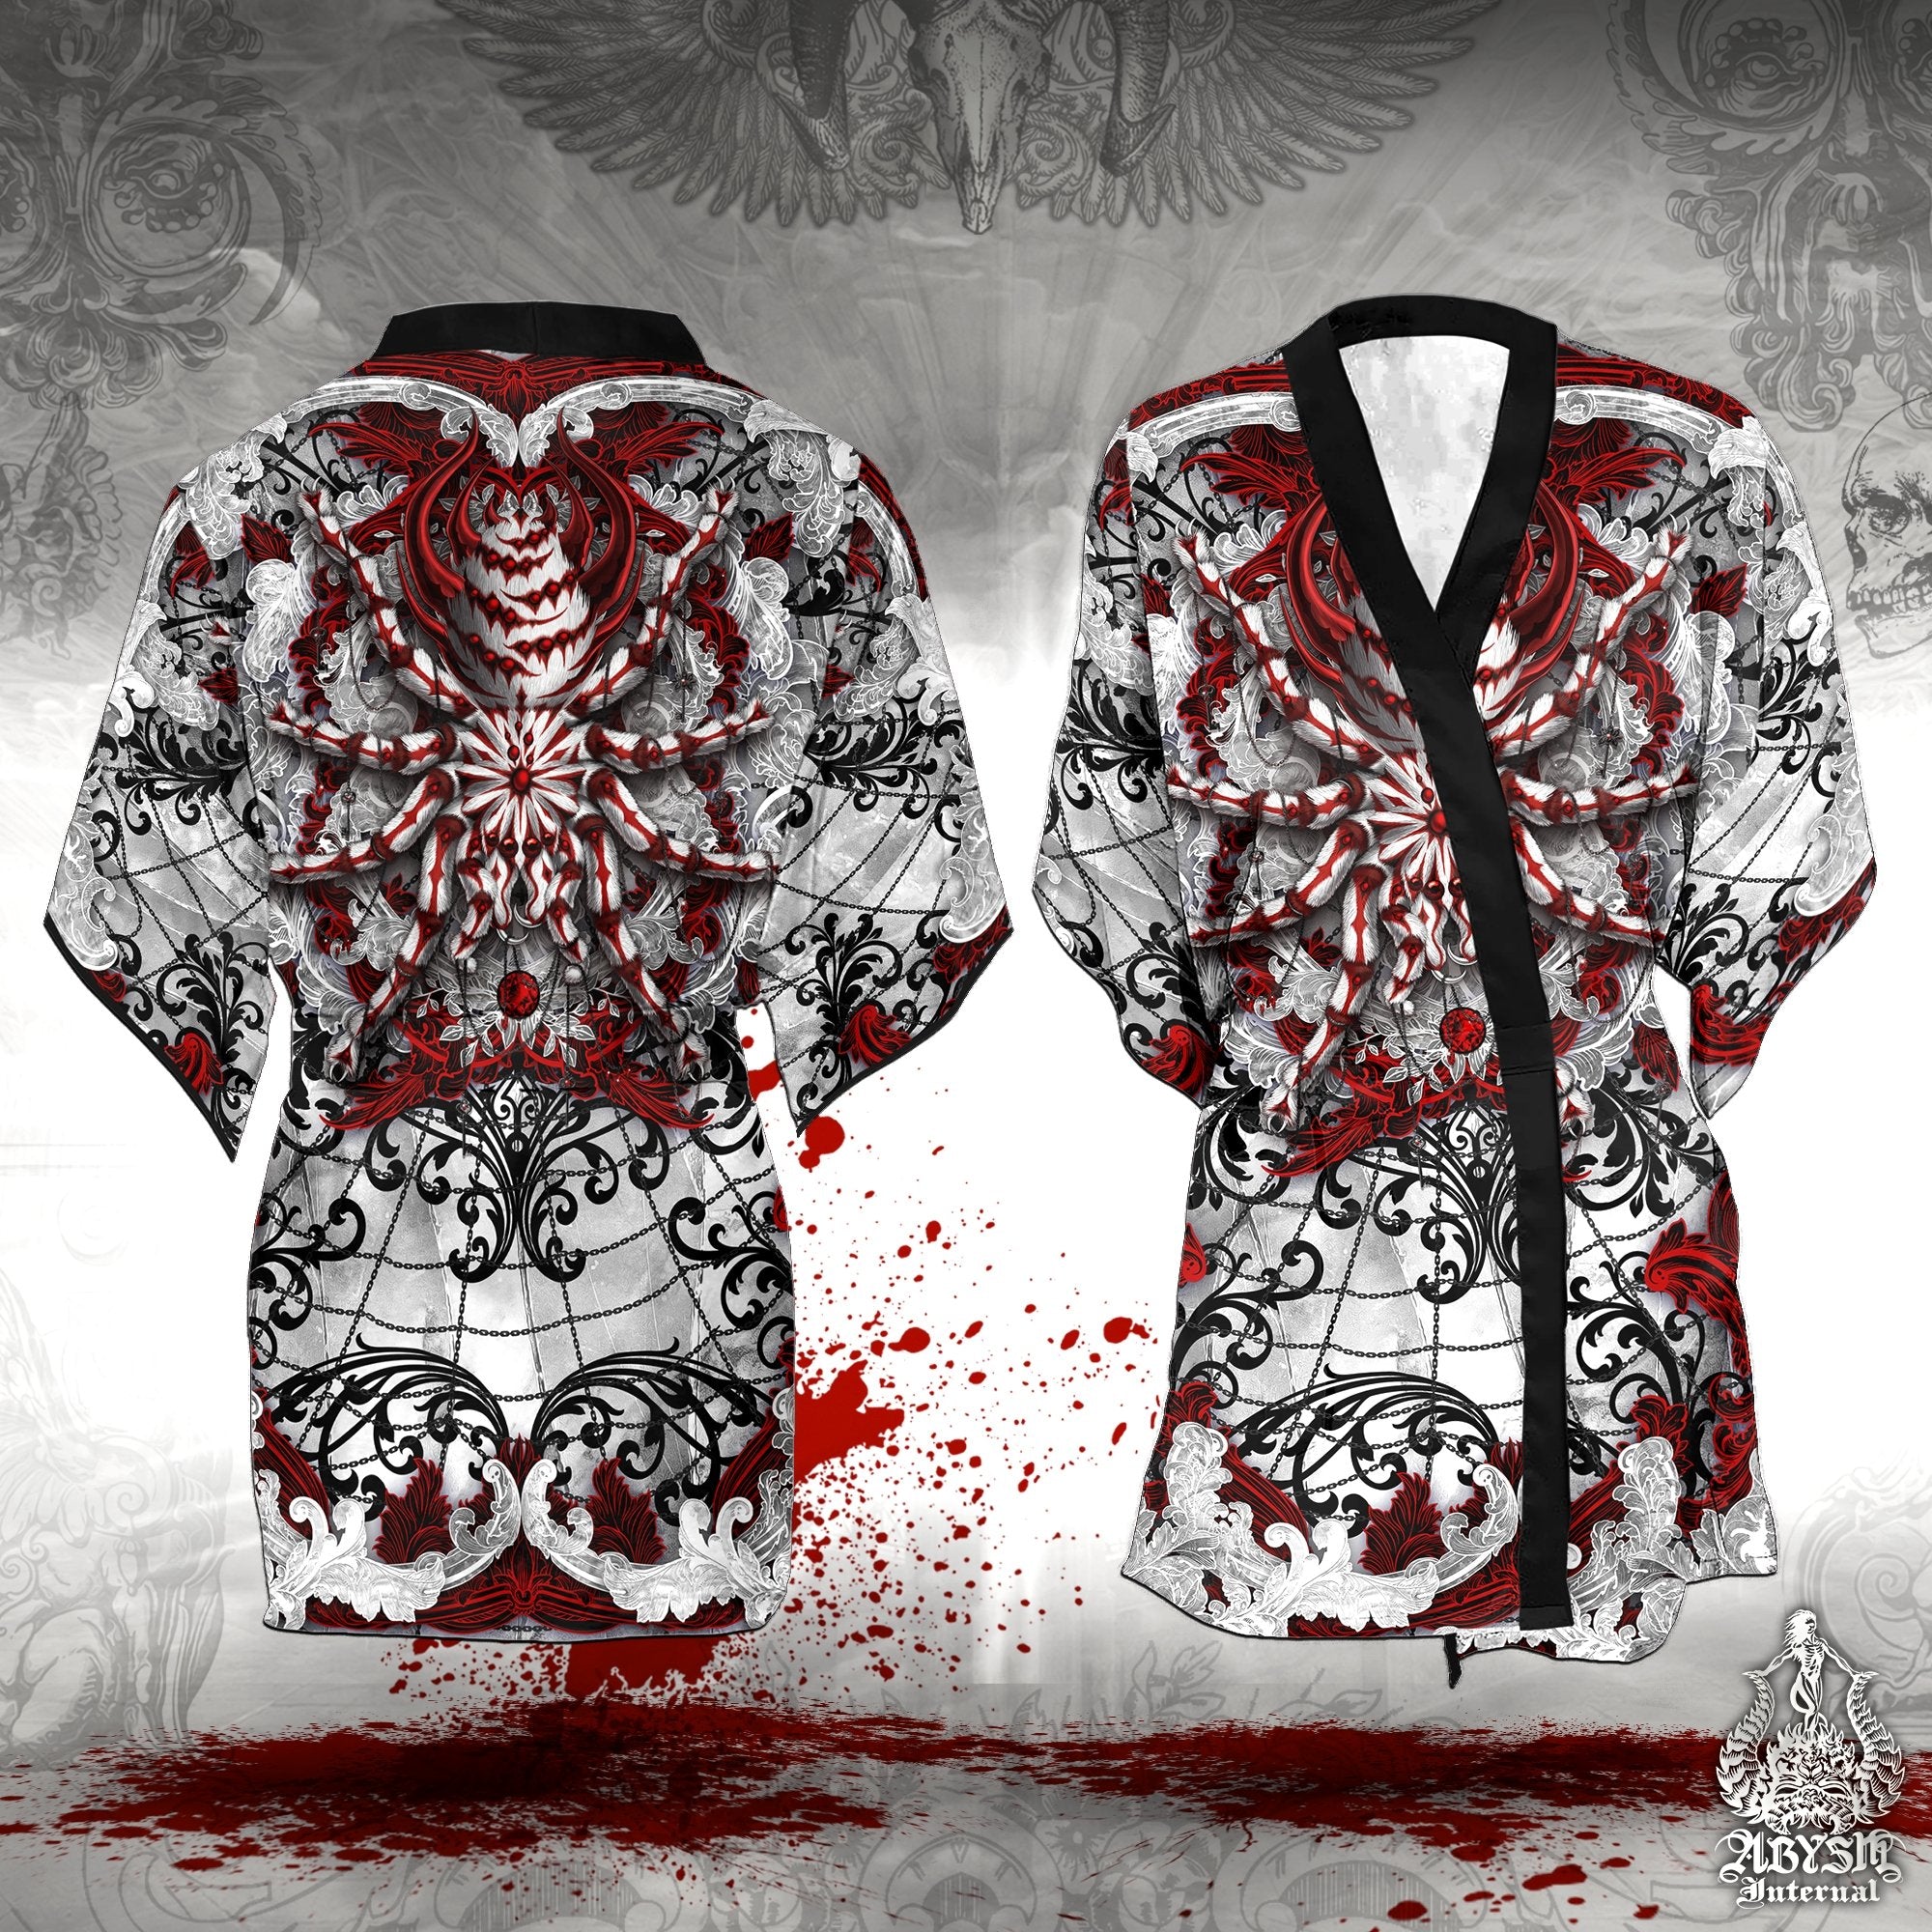 Kimono Cover Up, Unisex Kimono Jacket Robe